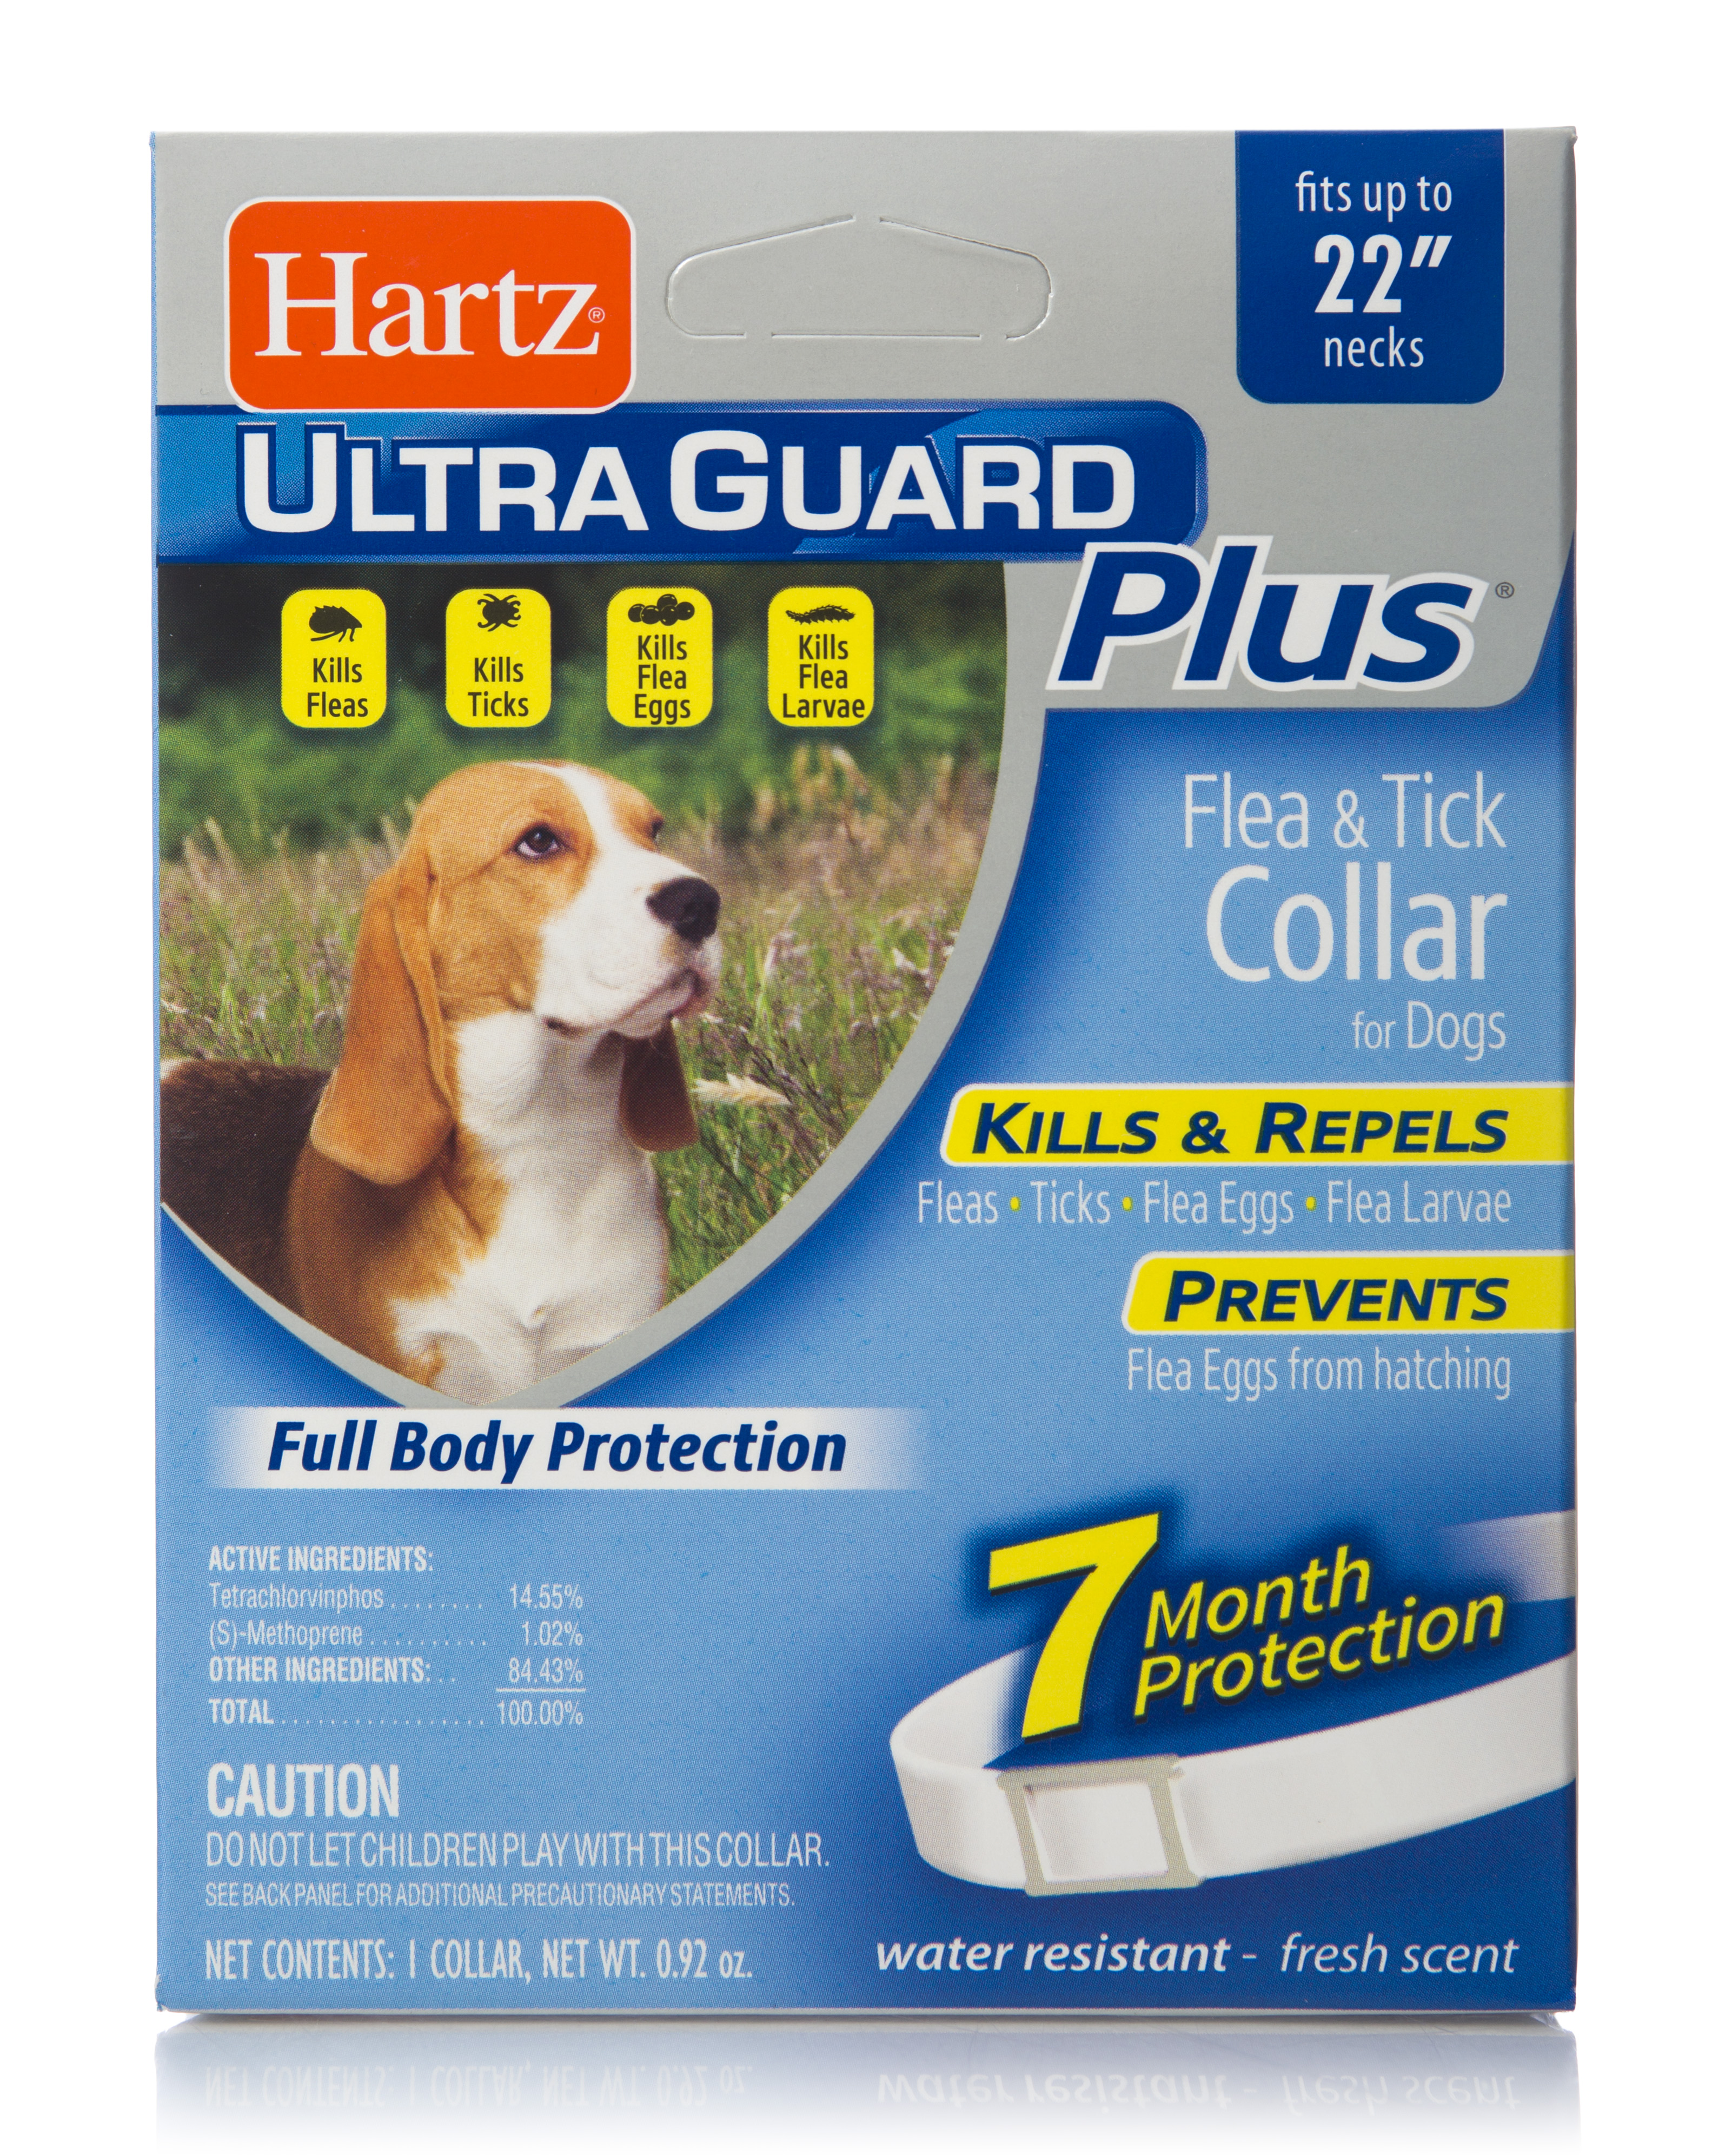 Hartz UltraGuard Plus Flea & Tick Collar For Dogs - image 1 of 3